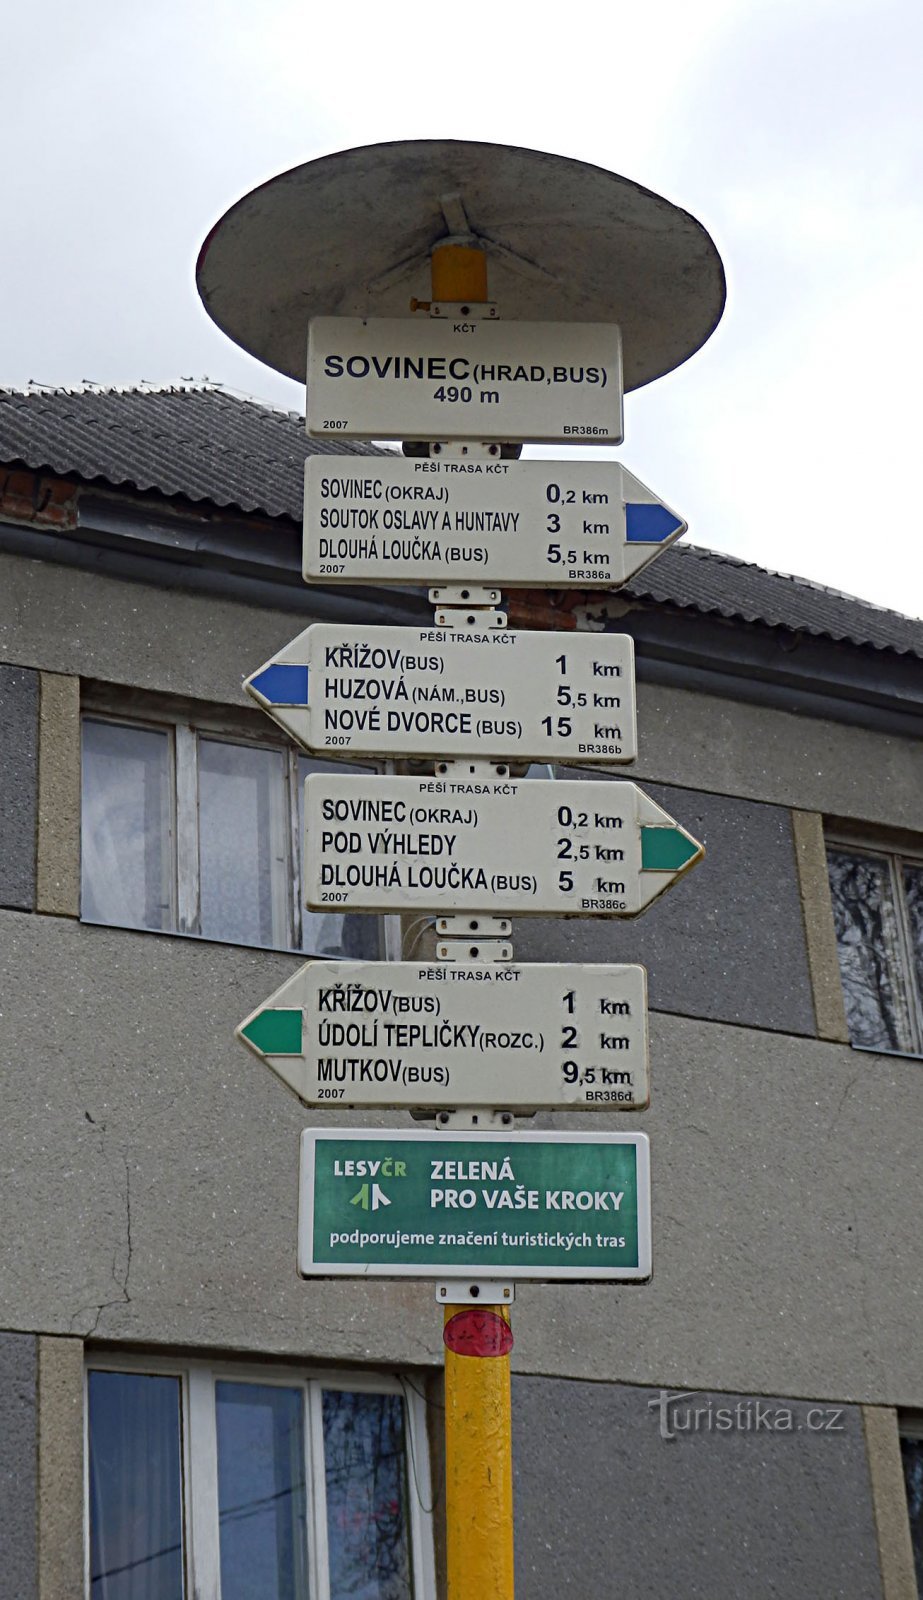 Castelul Sovinec - stâlp indicator